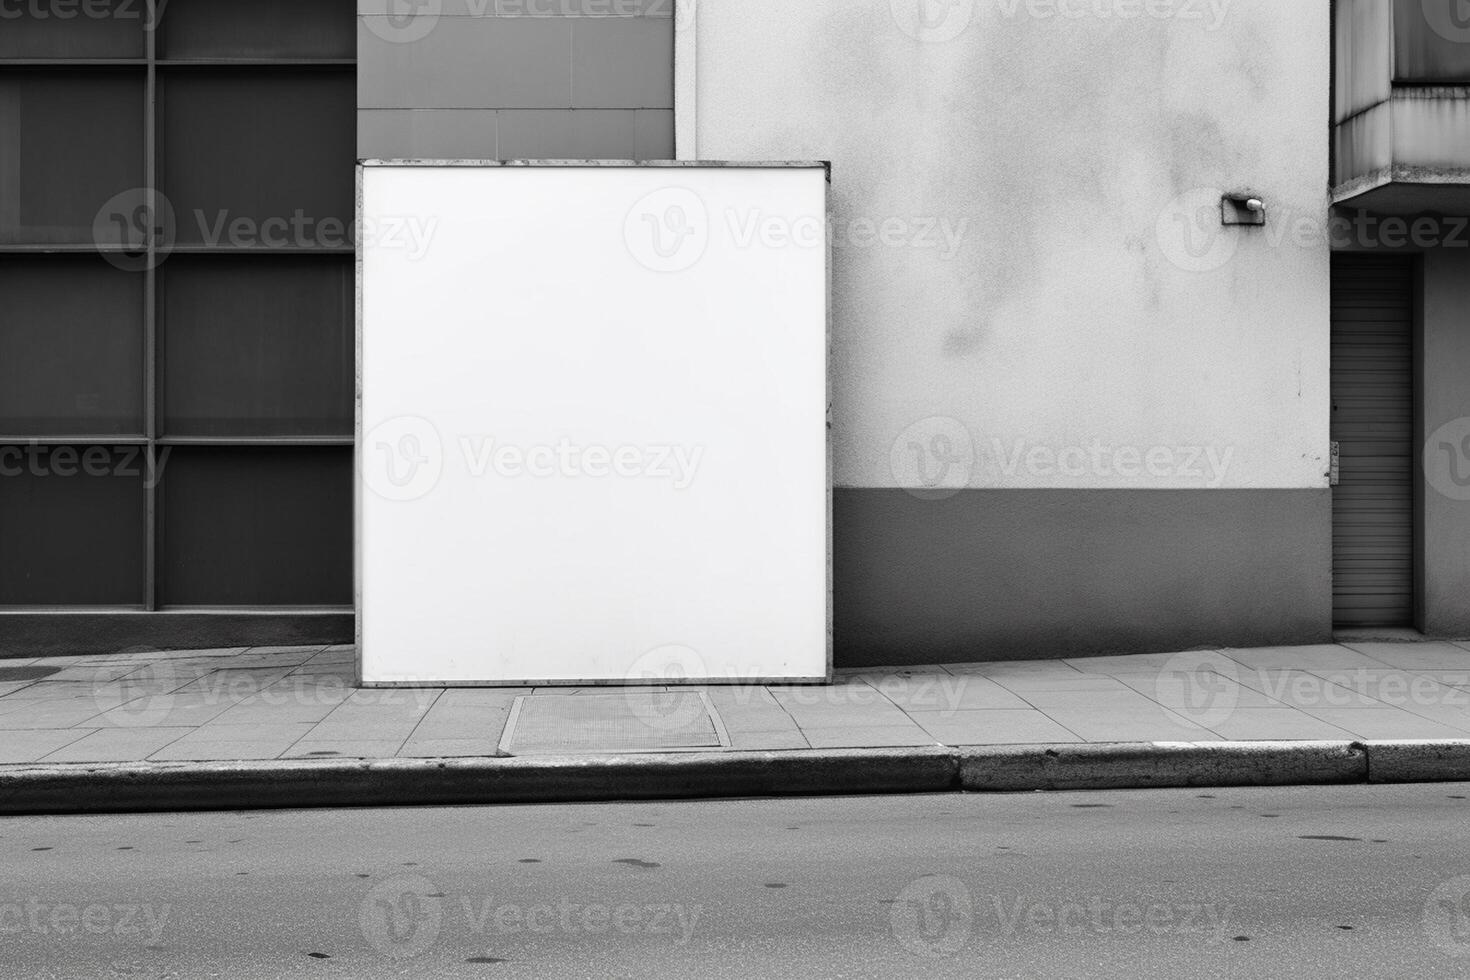 ai generativ en tom vit anslagstavla attrapp på en trottoar i en stad foto